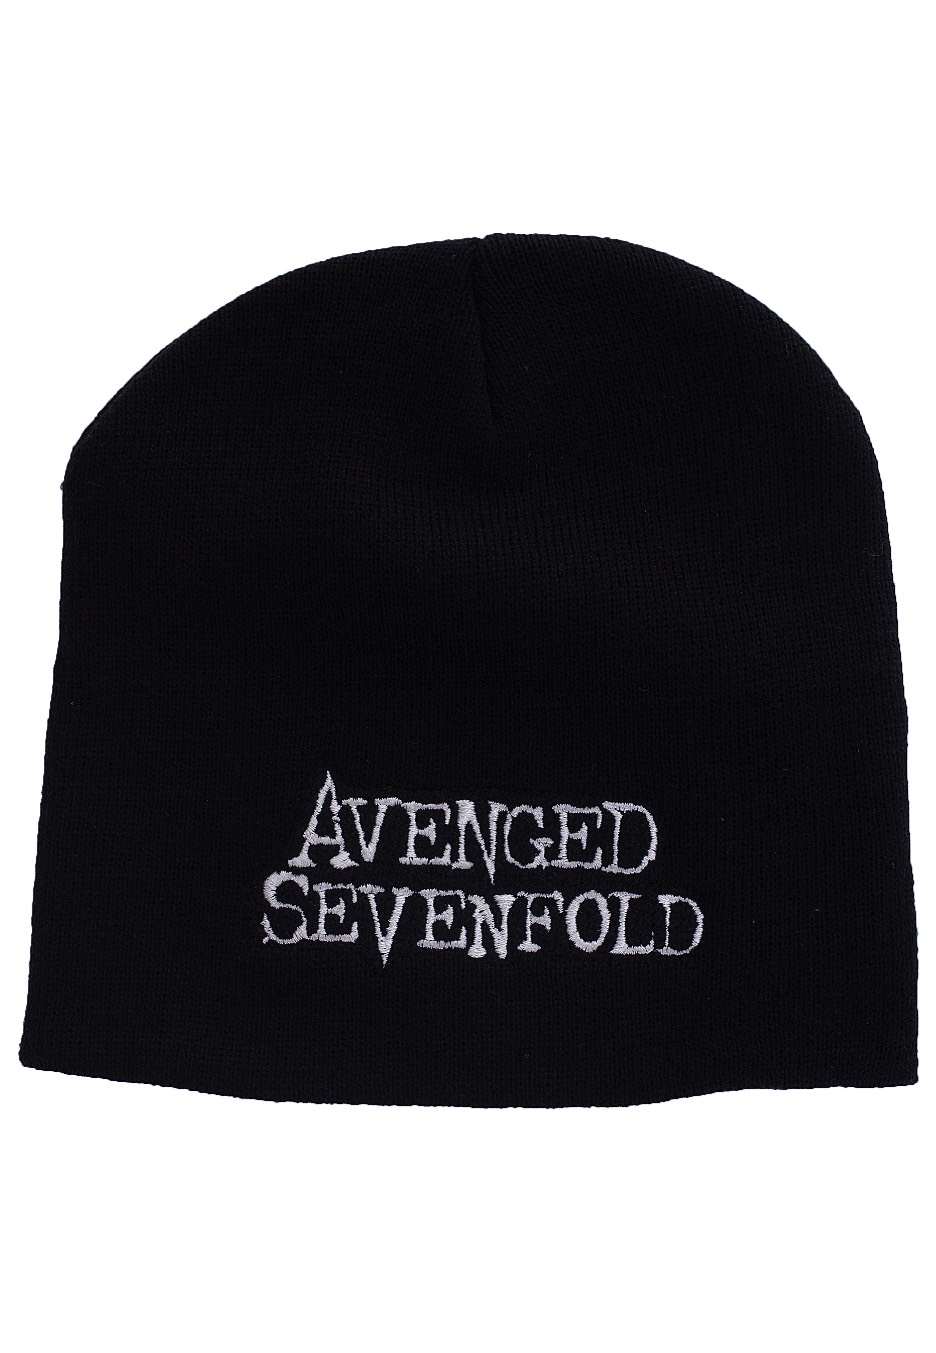 Avenged Sevenfold - Logo - Beanies